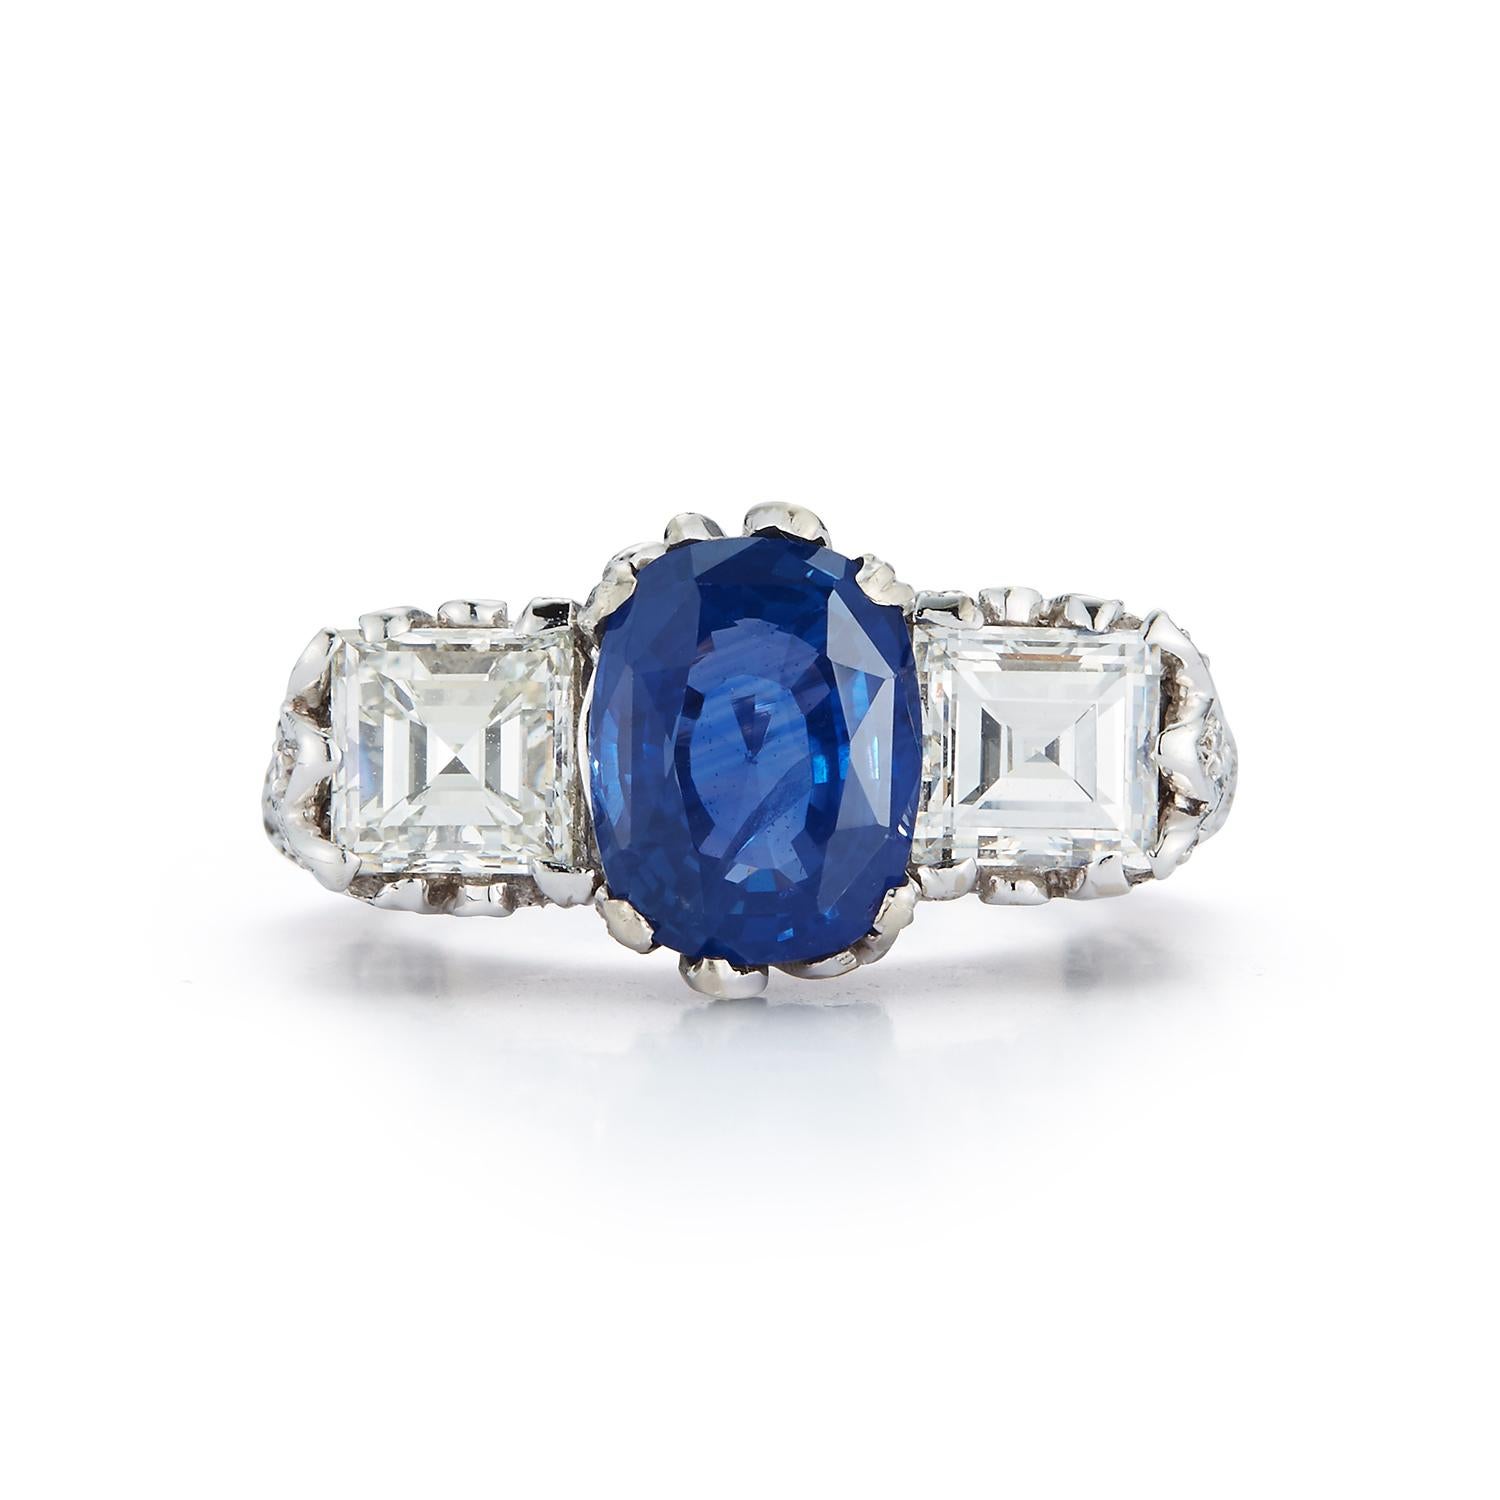 AGL Certified Sapphire & Diamond Three Stone filigranen Ring in Platin gesetzt.
Art Deco. Hergestellt um 1920
Saphir Gewicht: 3,72 Karat
Diamant Gewicht ca. .80 cts
Ringgröße: 6.25
Kostenlose Größenanpassung 
